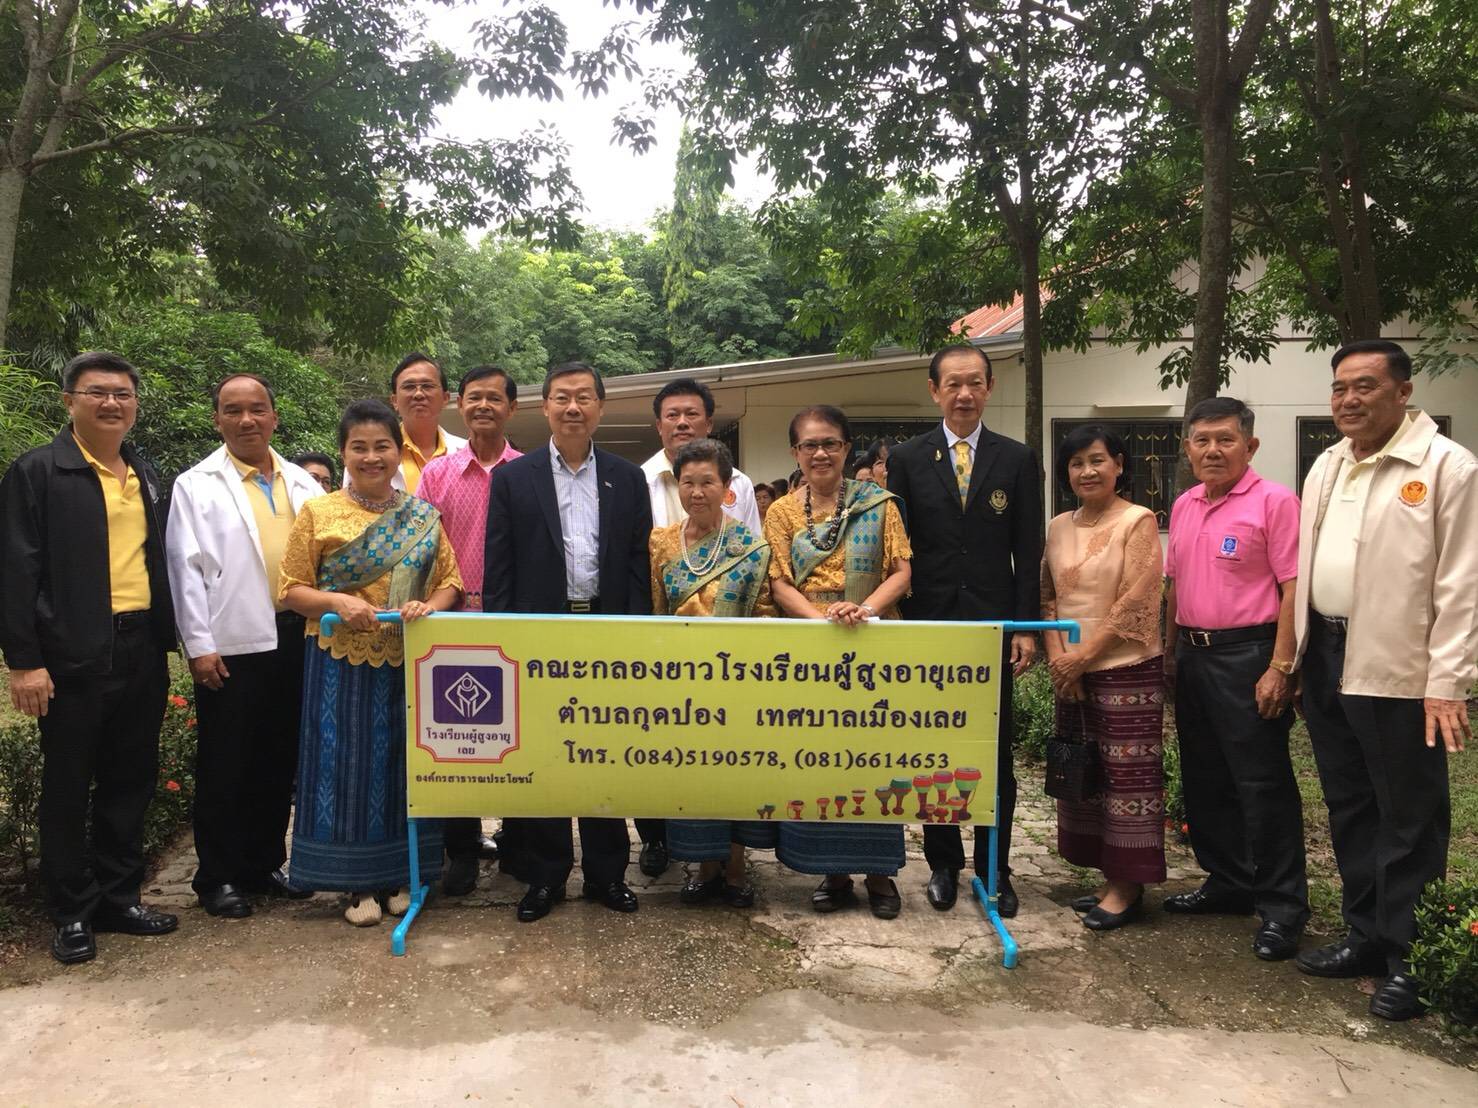 21 July 2018, at Loei Elderly School, Mueang Loei District, Loei Province